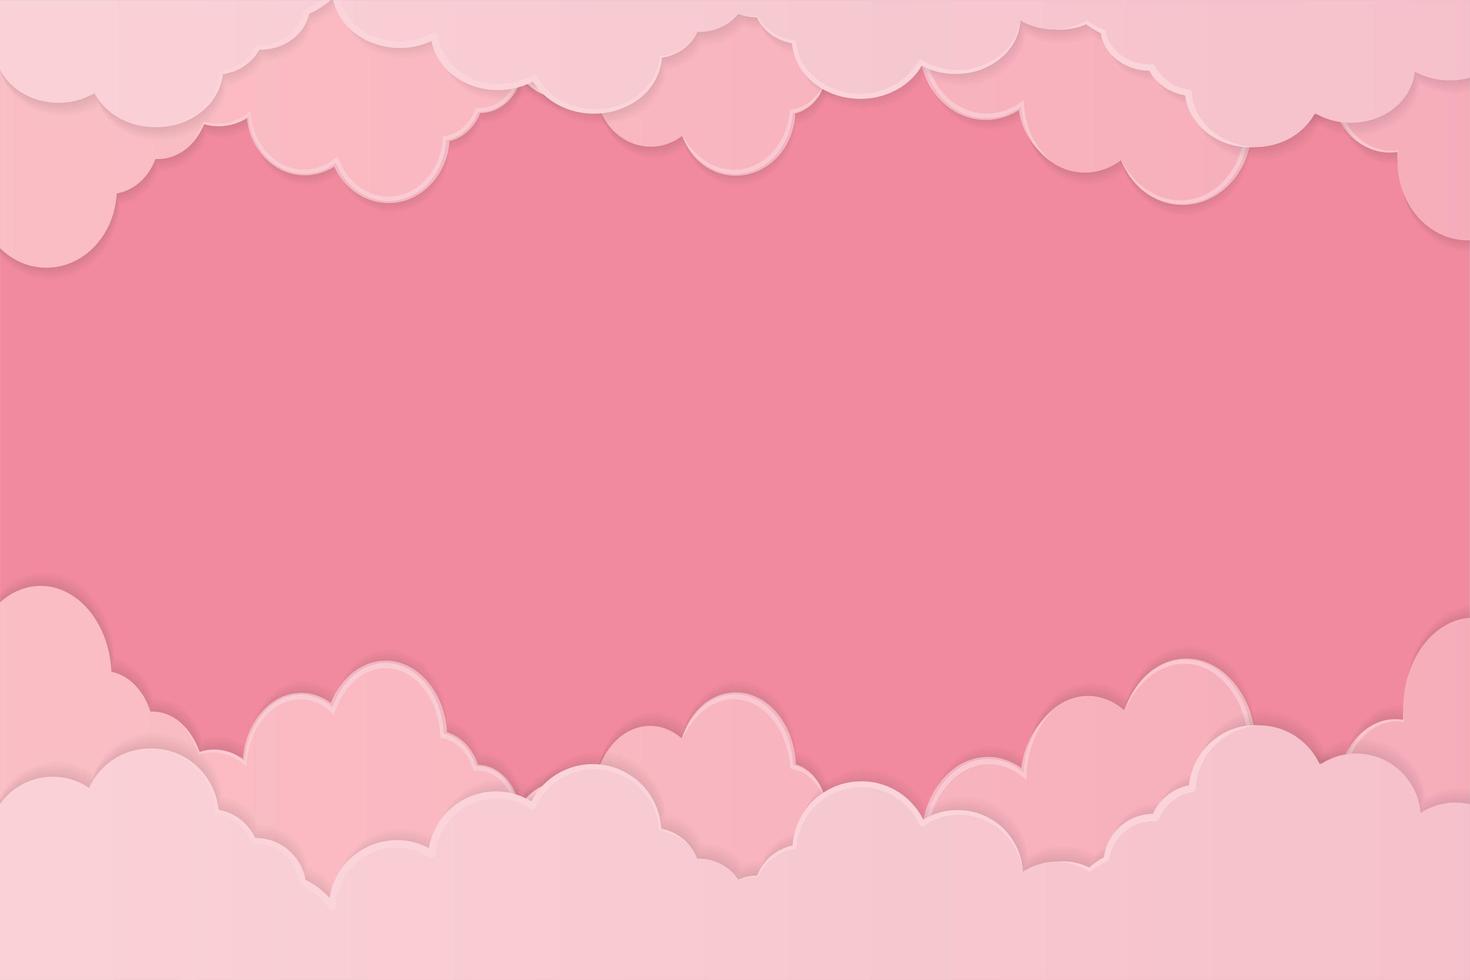 roze papier stijl wolk achtergrond vector